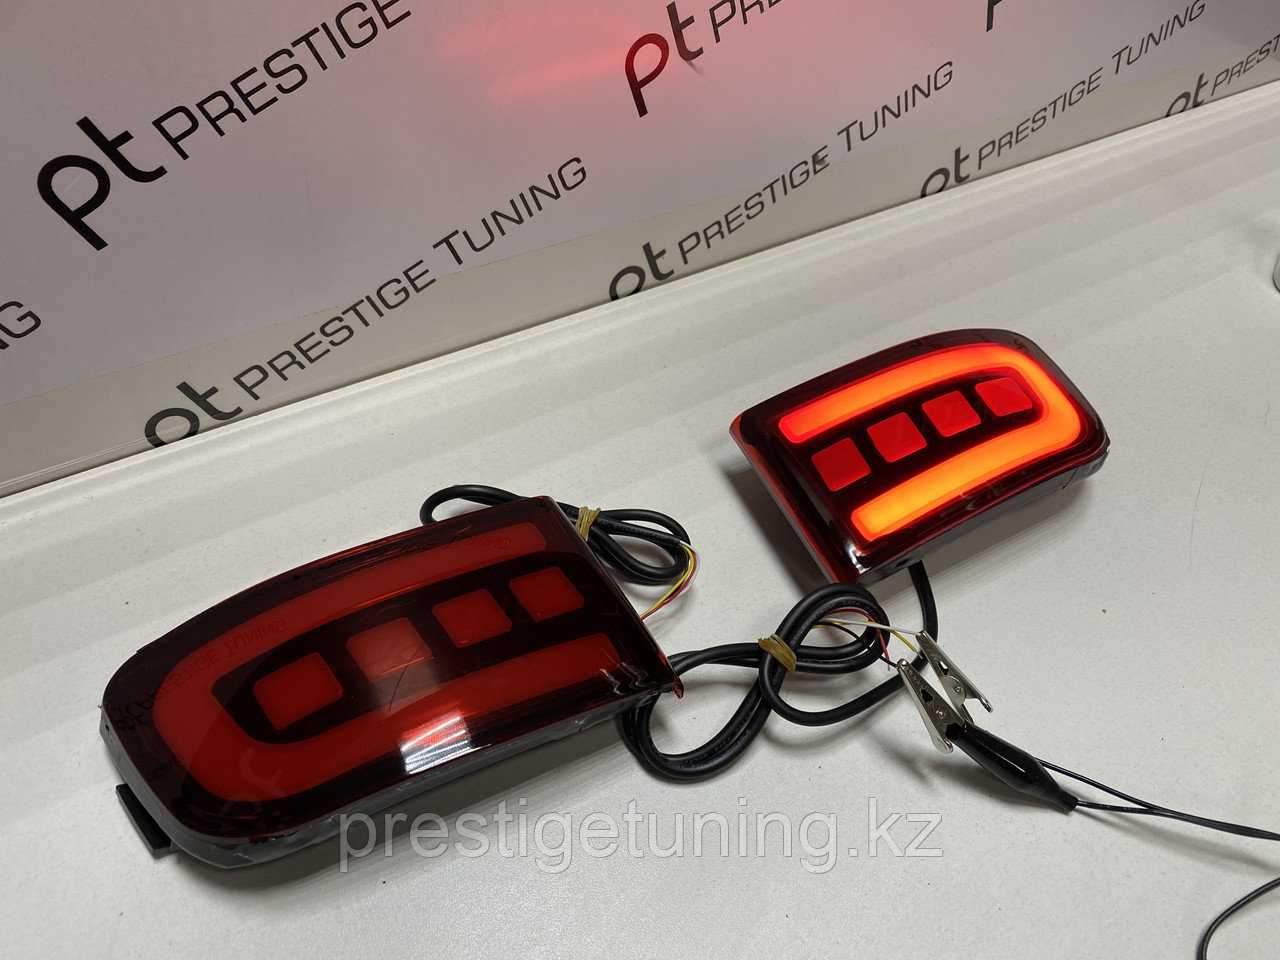 Задние отражатели LED в бампер на Land Cruiser Prado 120 (Красный цвет) дизайн 2018